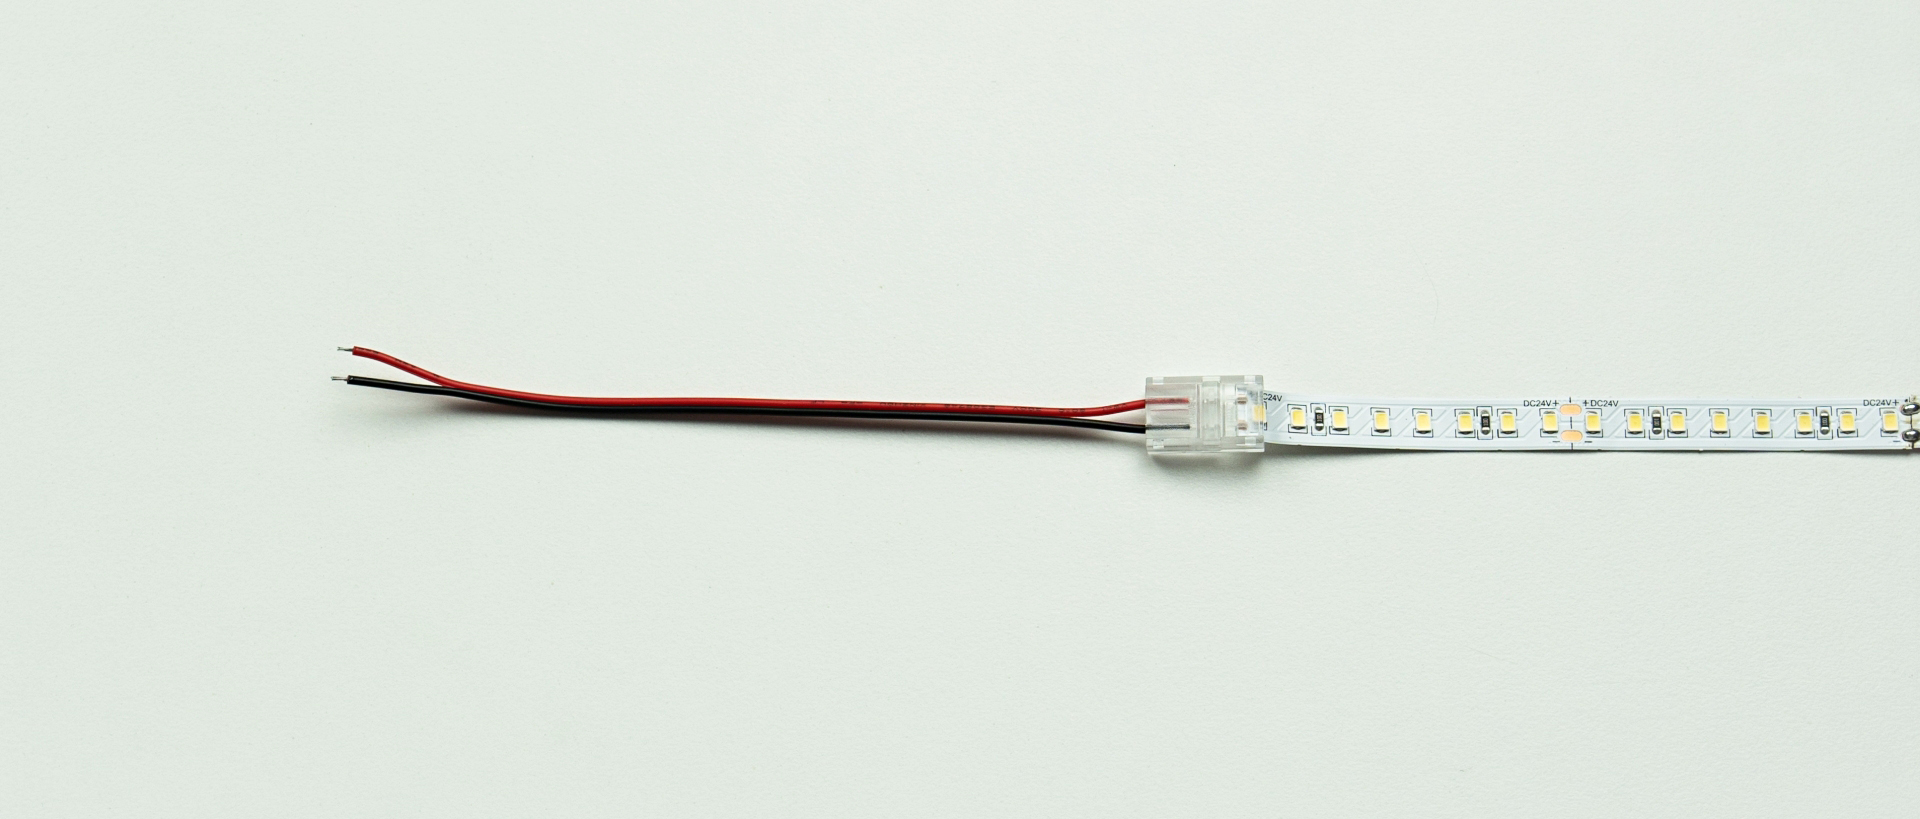 Anschlussdiagramm des LED-Streifens und des Kabels mit einem einseitigen Stecker